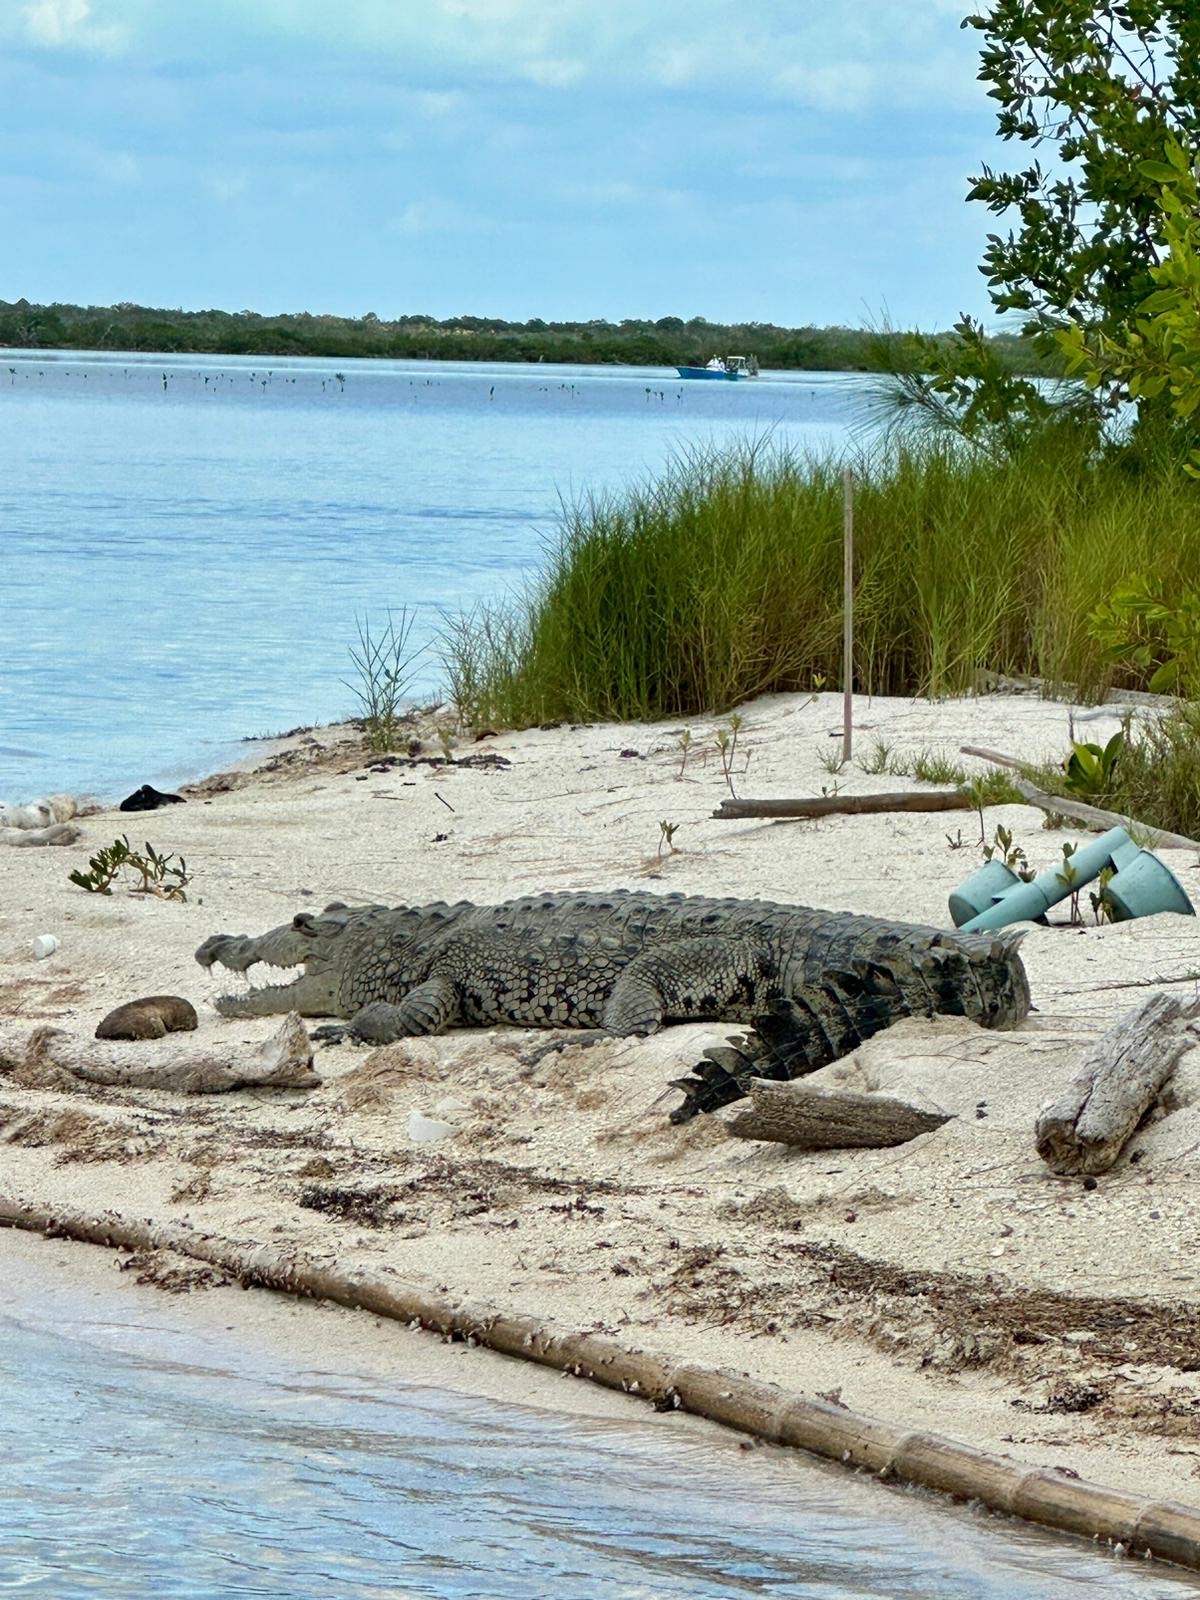 ESB Crocodile on the beach